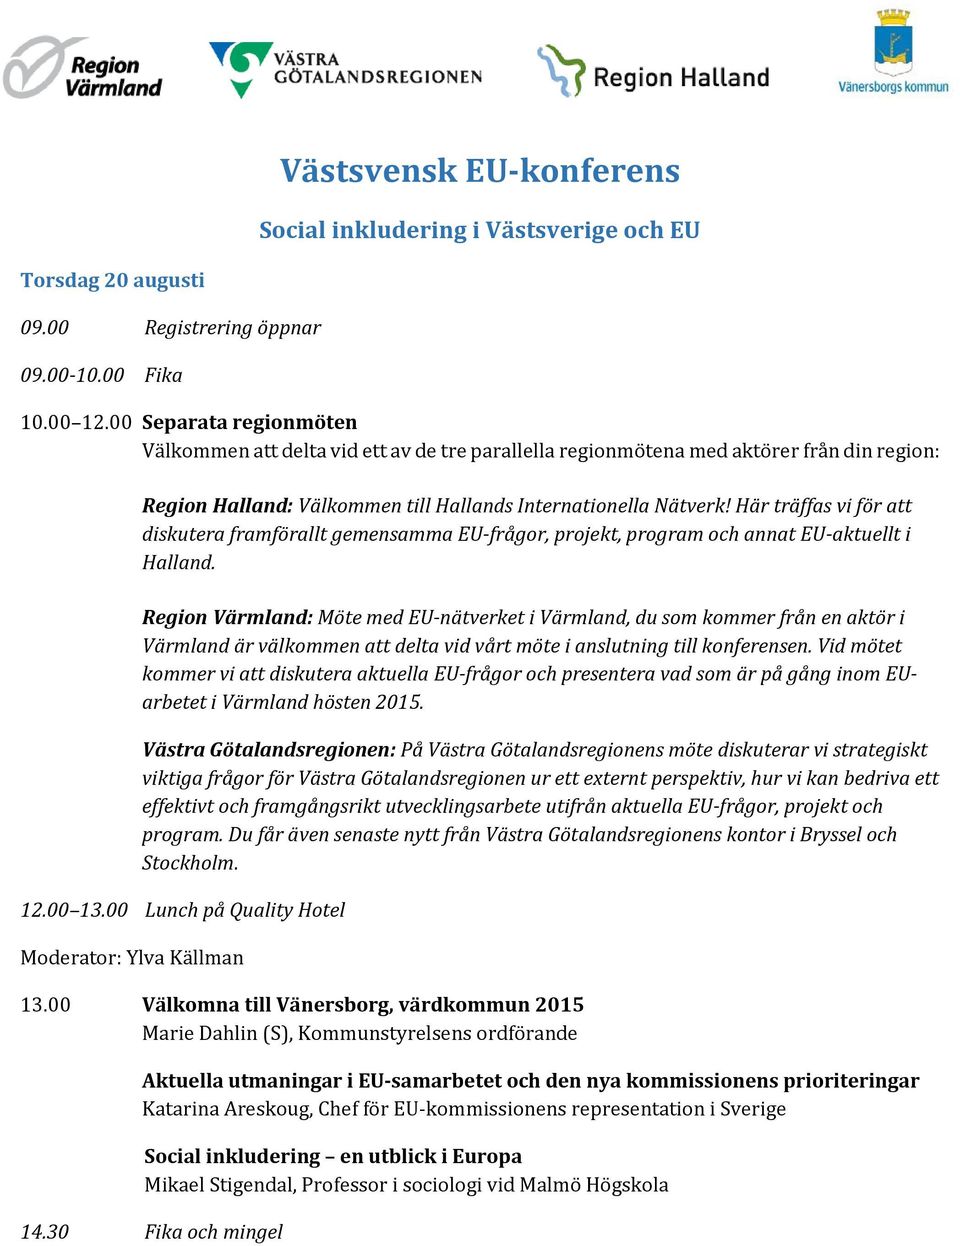 Här träffas vi för att diskutera framförallt gemensamma EU-frågor, projekt, program och annat EU-aktuellt i Halland.